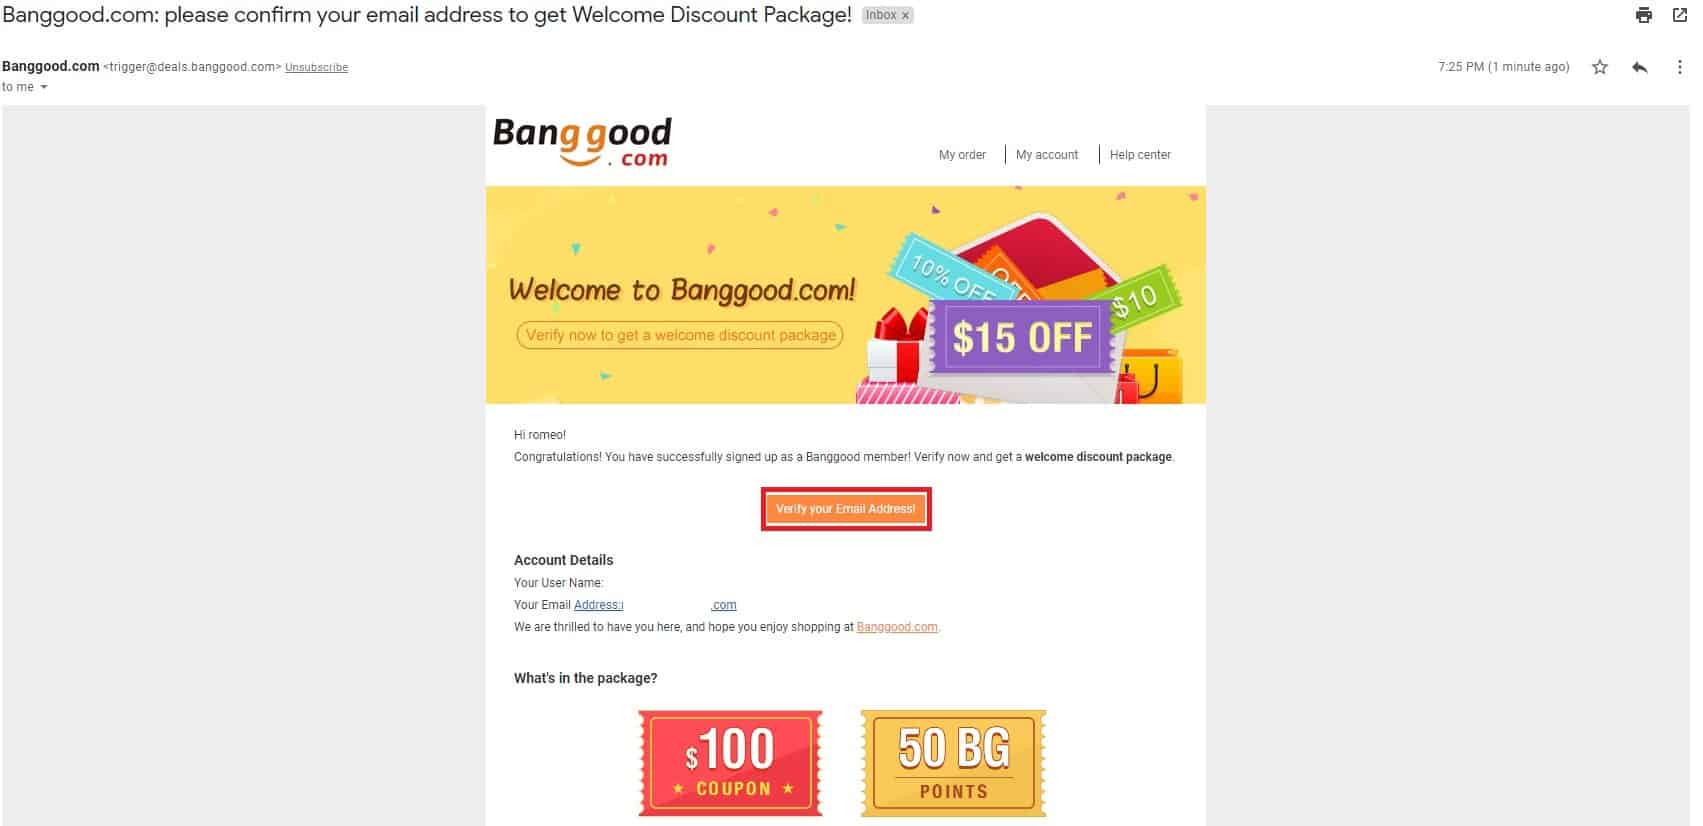 The Bang good welcome bonus